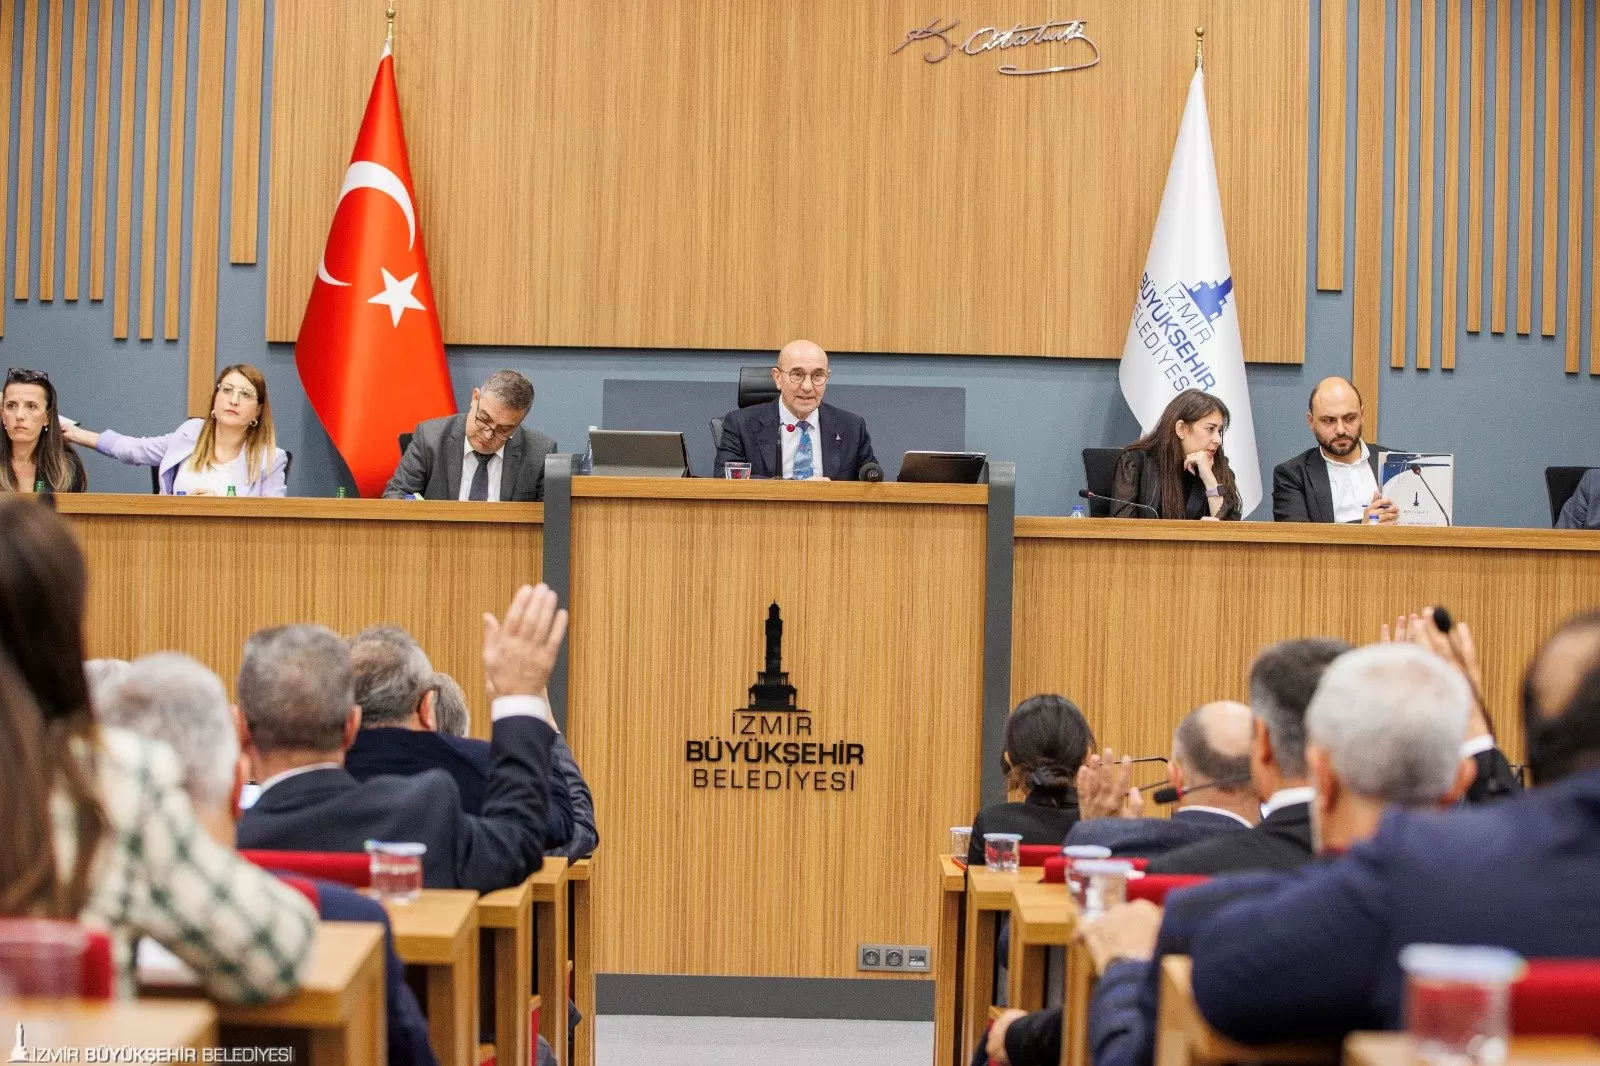 İzmir Büyükşehir Belediye Başkanı Tunç Soyer, İzmir Büyükşehir Belediyesi Meclis toplantısında, 20 Kasım Dünya Çocuk Hakları Günü vesilesiyle gündeme dair önemli açıklamalarda bulundu.